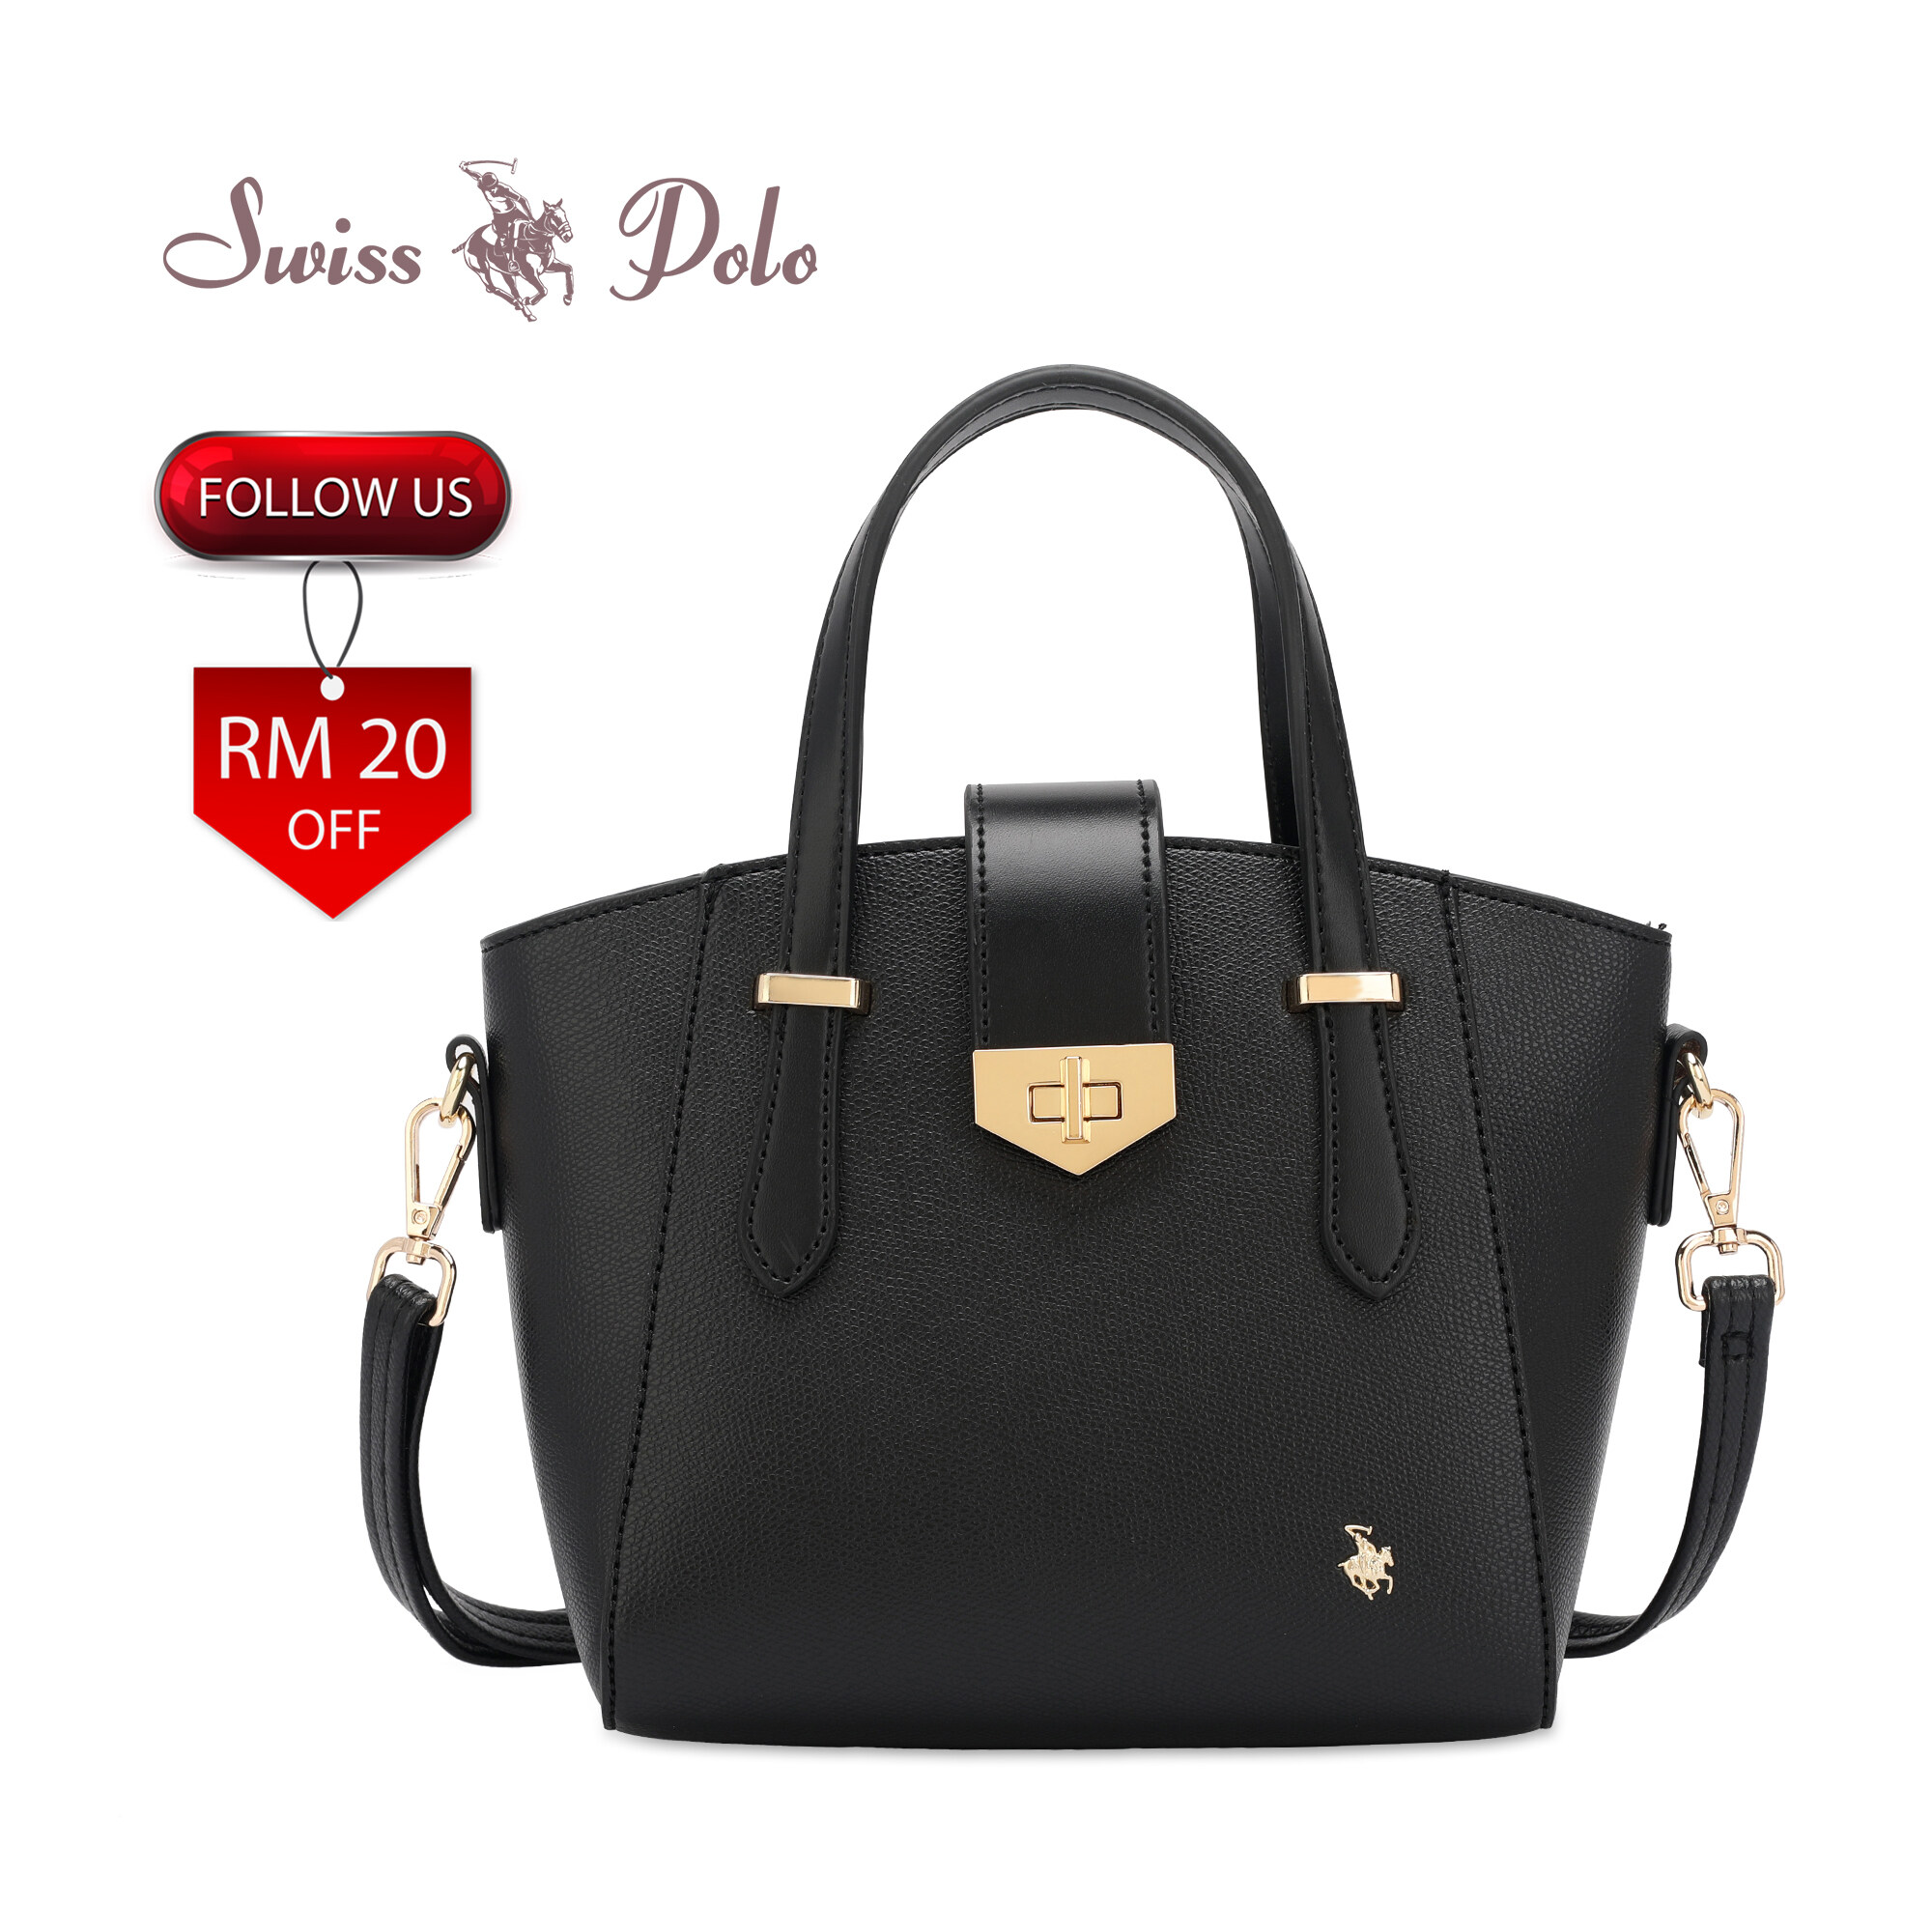 SWISS POLO Ladies Top Handle Sling Bag HEZ 482-1 BLACK